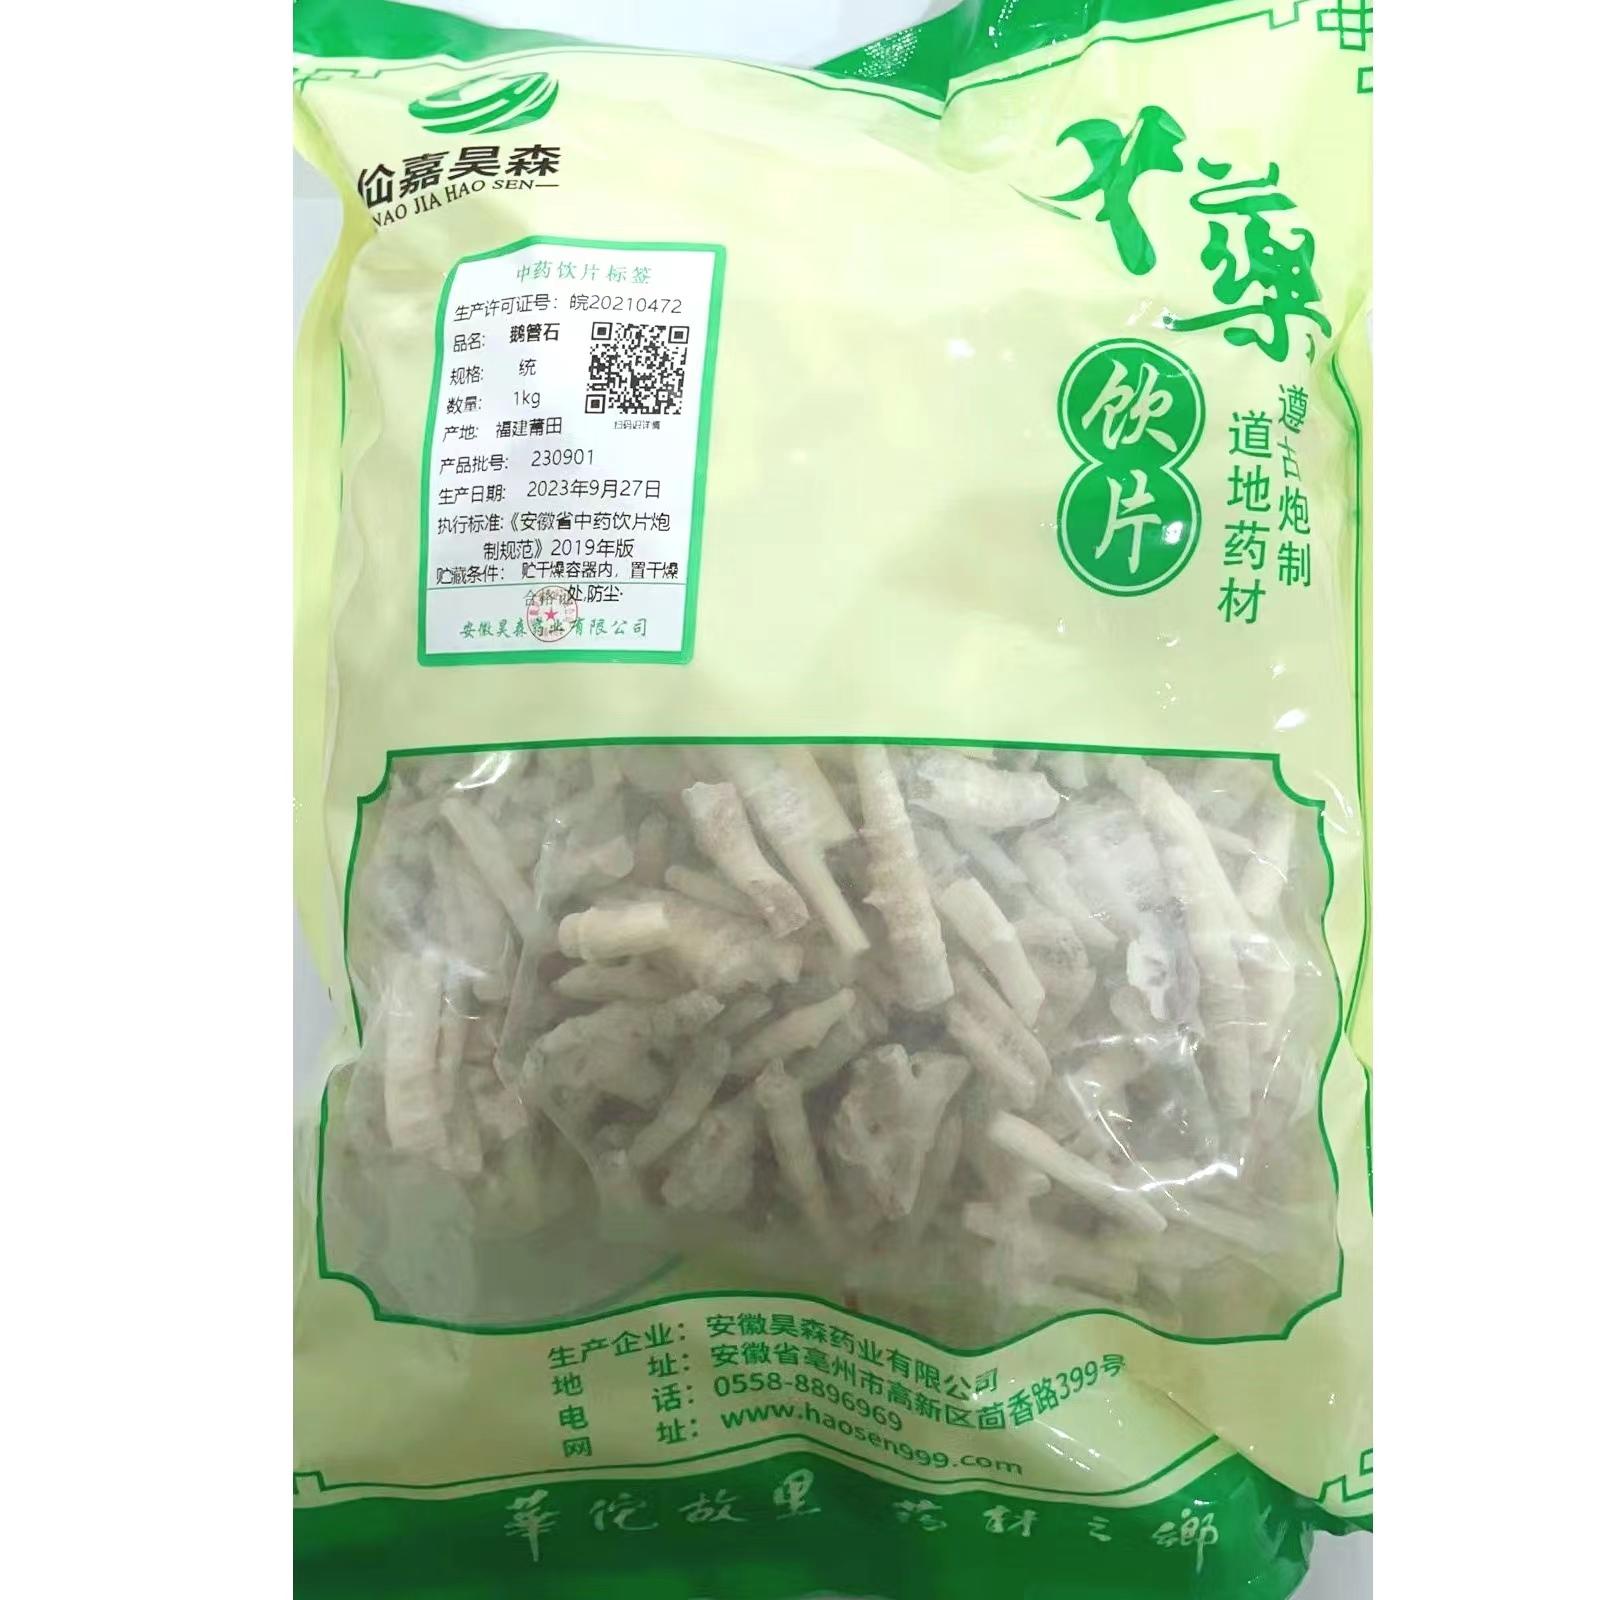 【】鹅管石-统-1kg/袋-安徽昊森药业有限公司